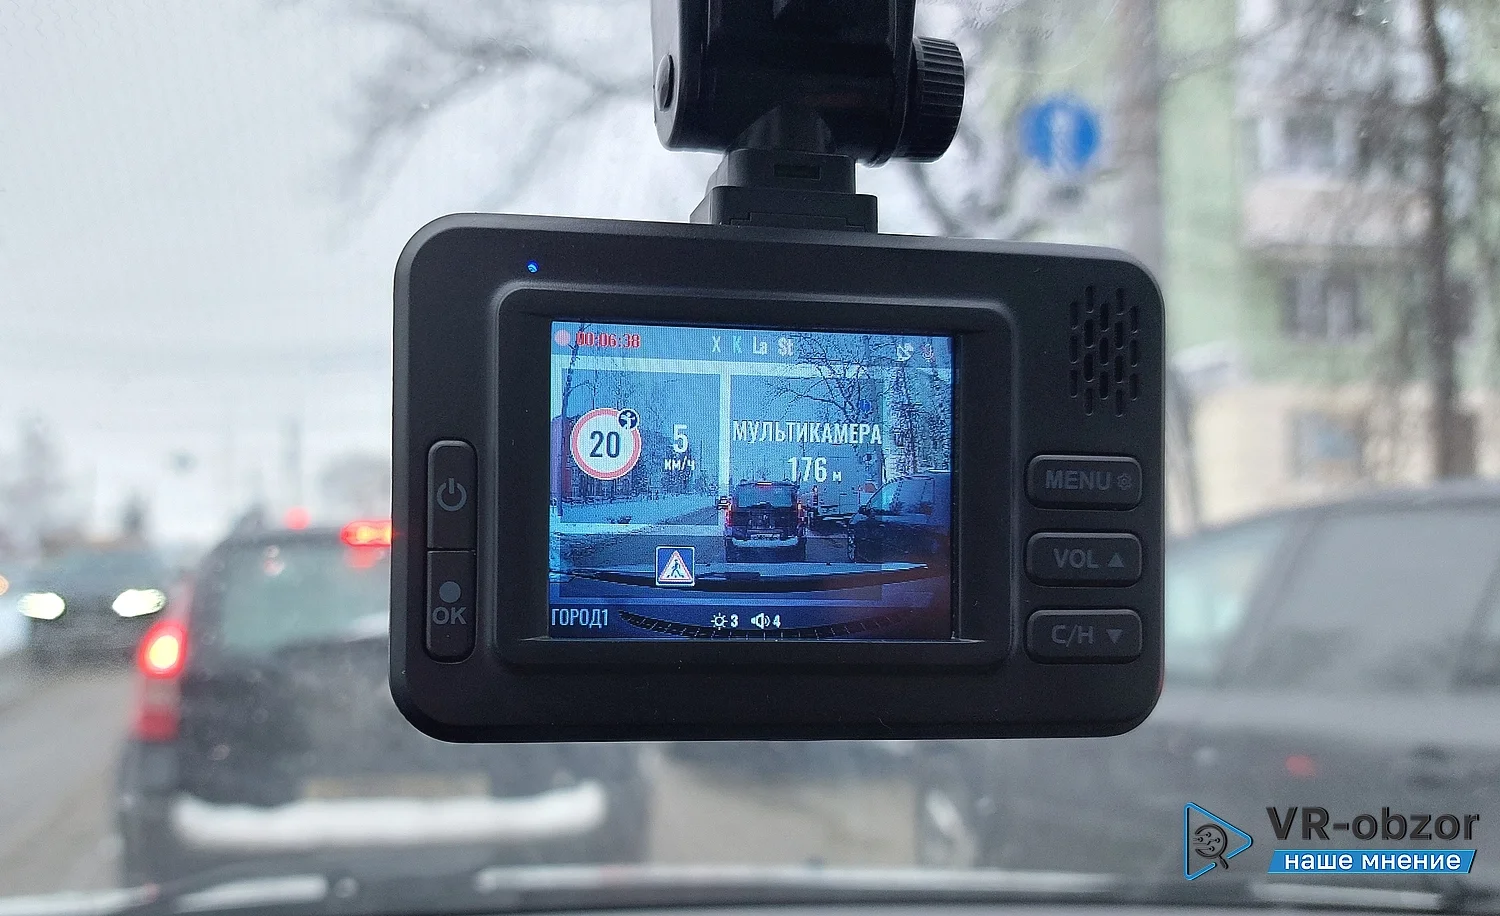 Многофункциональный регистратор roadgid x5 gibrid: подробный обзор и его тестирование в дороге с фото и видео, реальные отзывы - автомастер